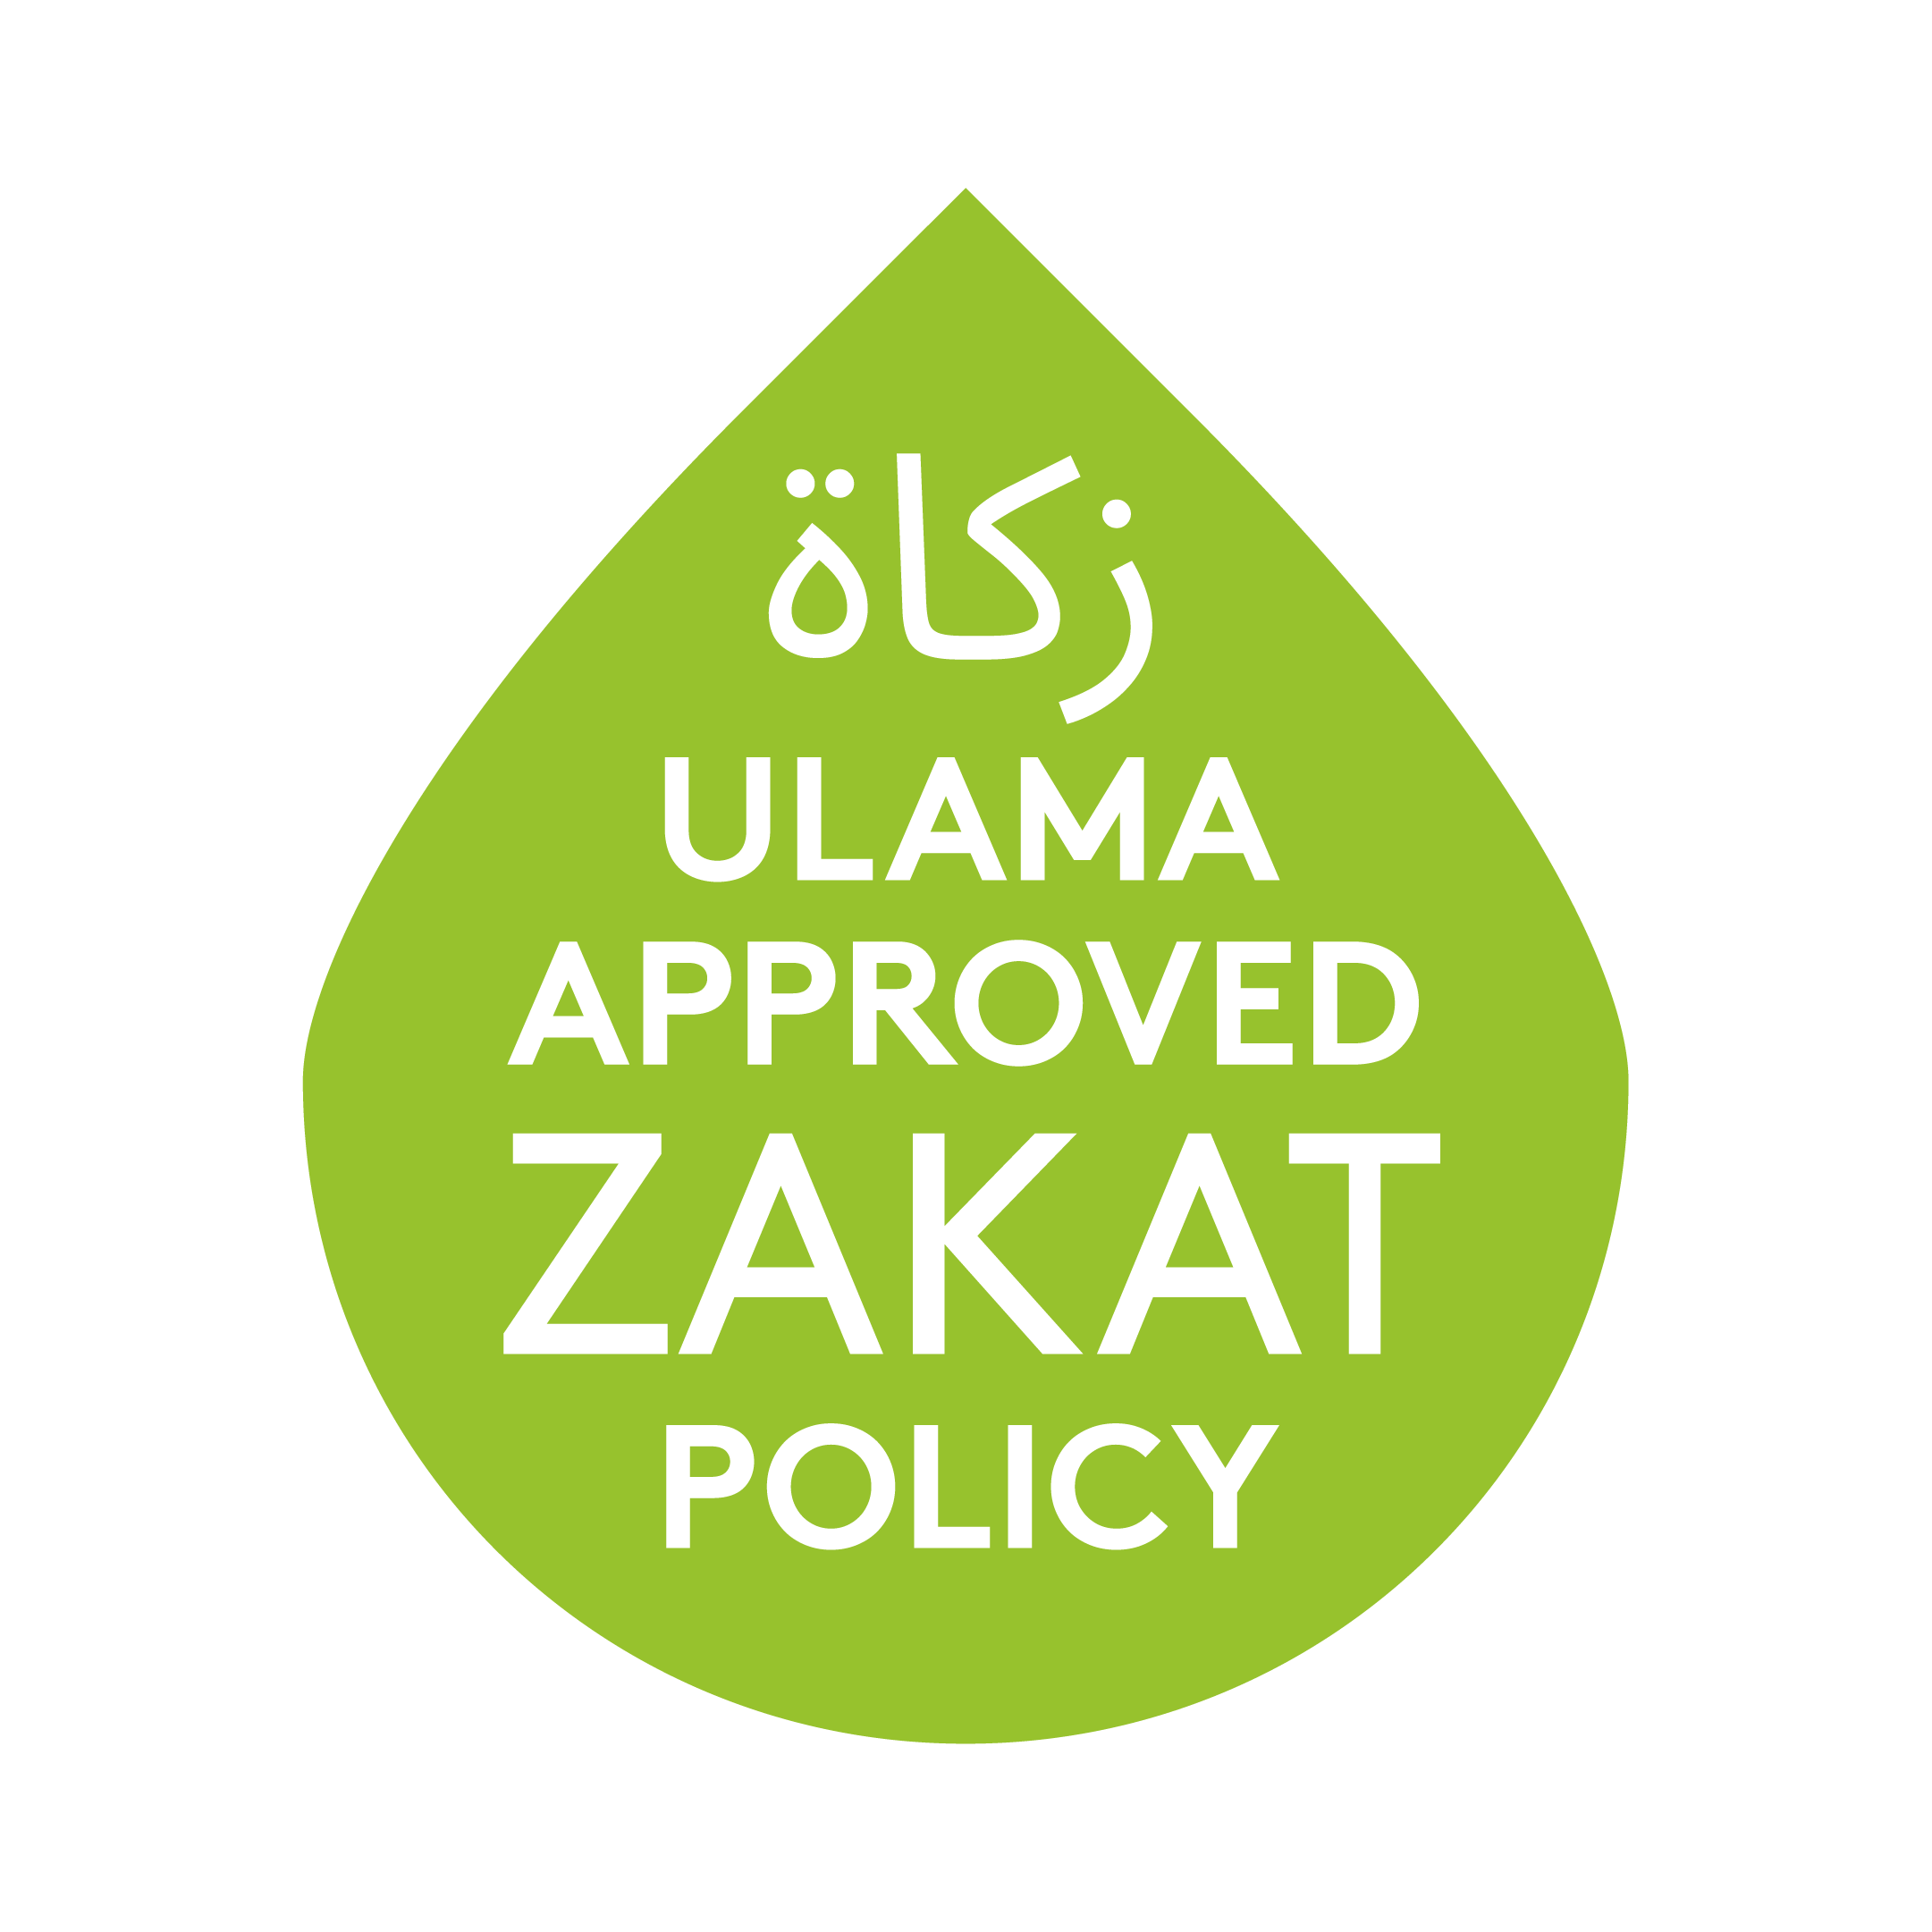 Zakat Policy